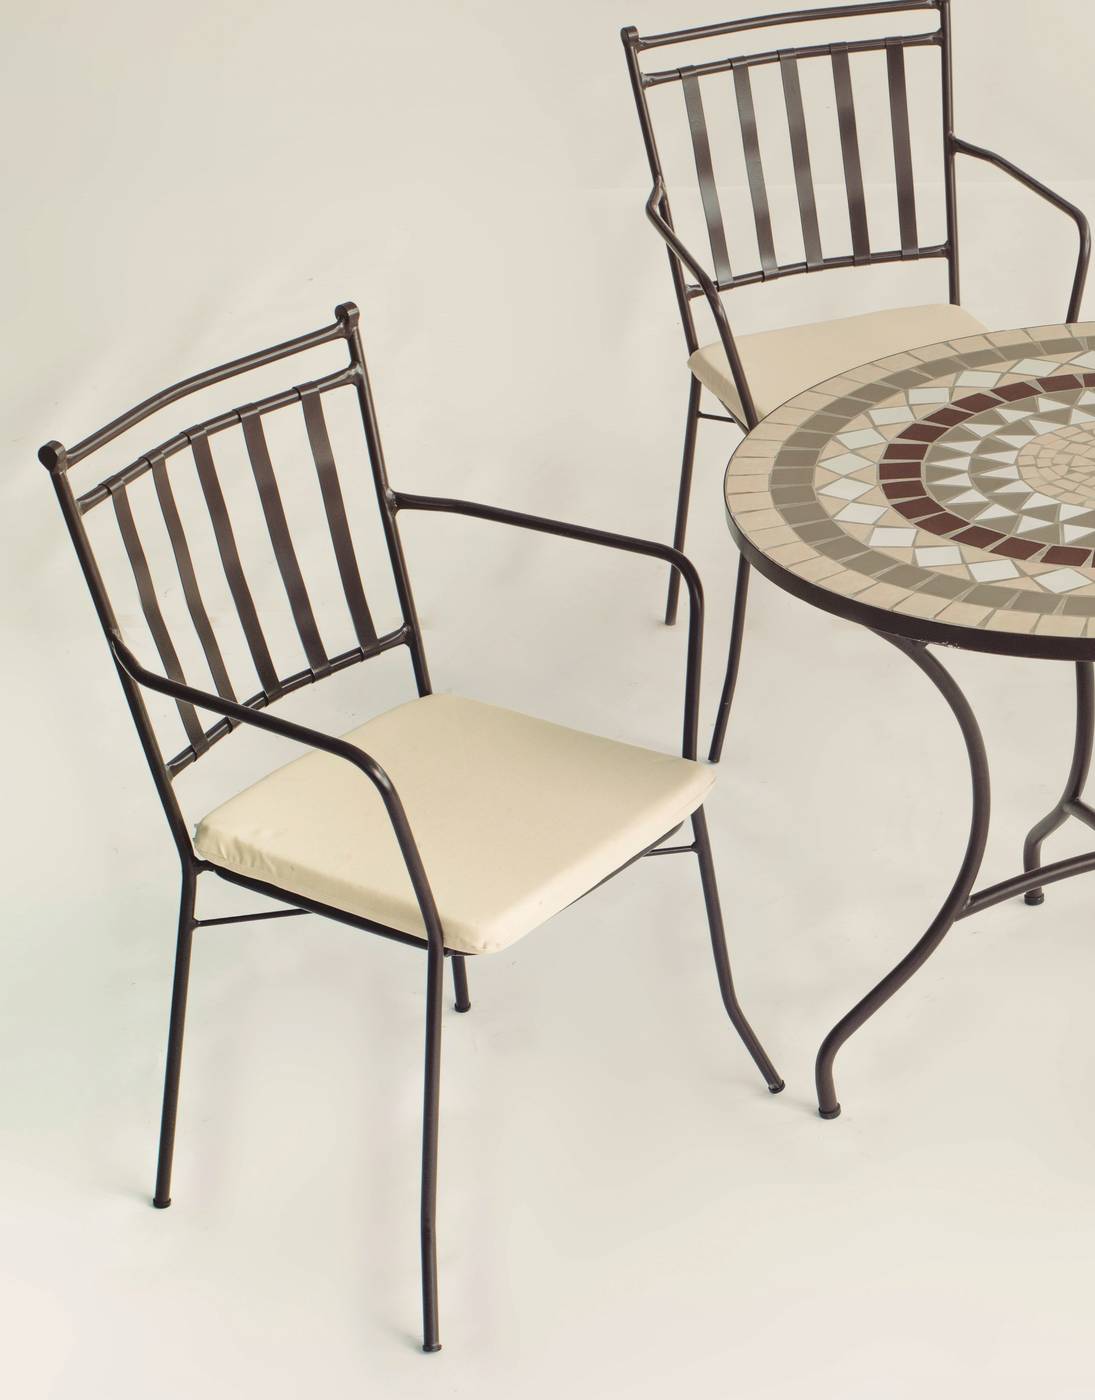 Conjunto Mosaico Camarines-Shifa - Conjunto de forja color bronce: mesa con tablero mosaico de 90 cm + 4 sillones con cojines asiento.